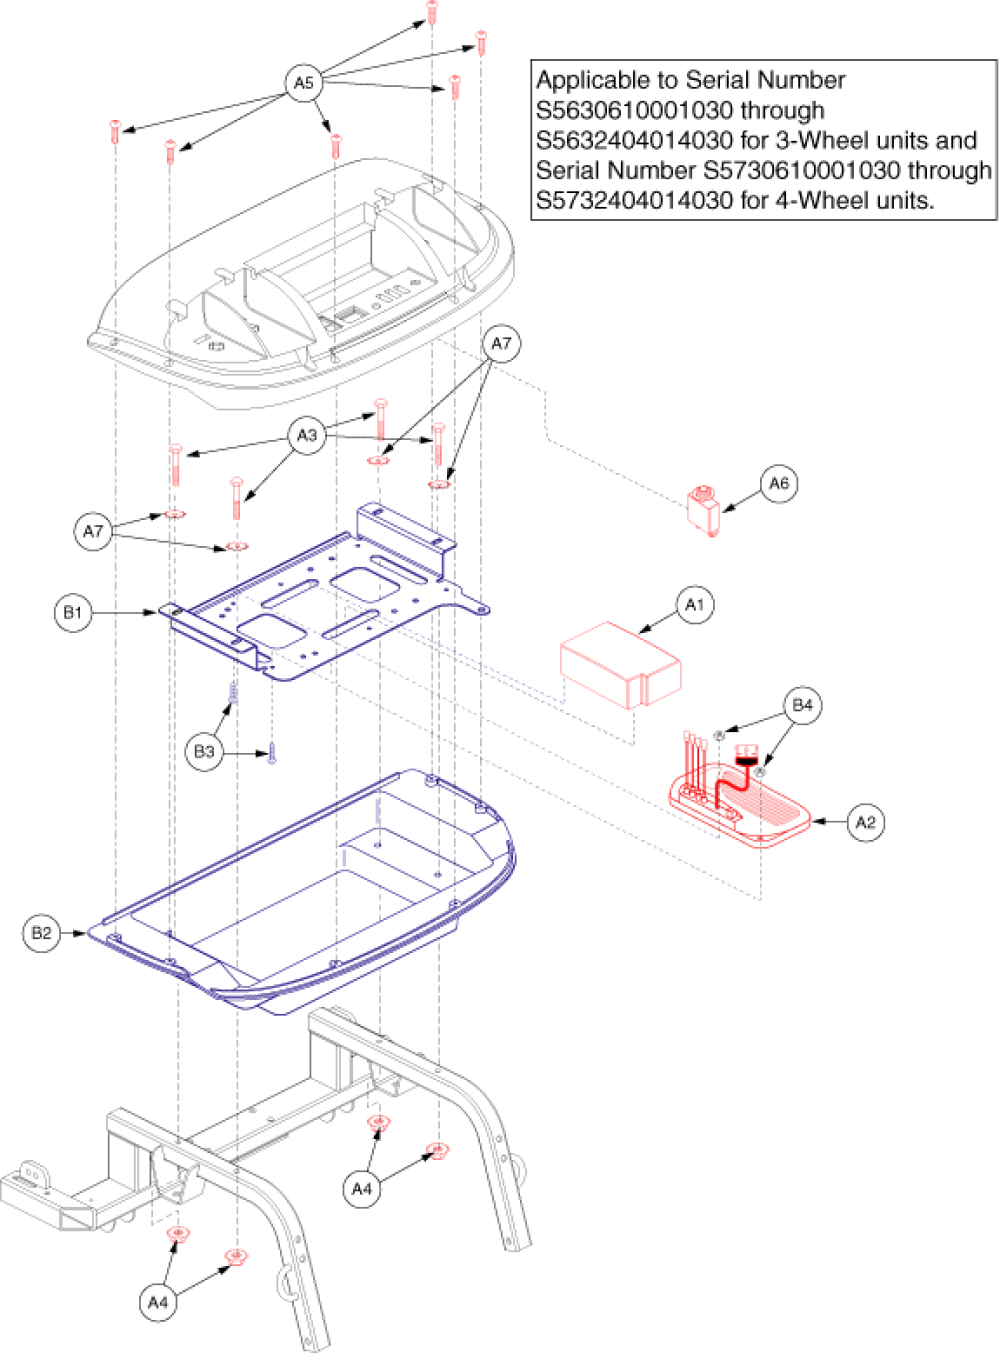 Electronics Assembly - Rear, Version 2 - Part 1 parts diagram